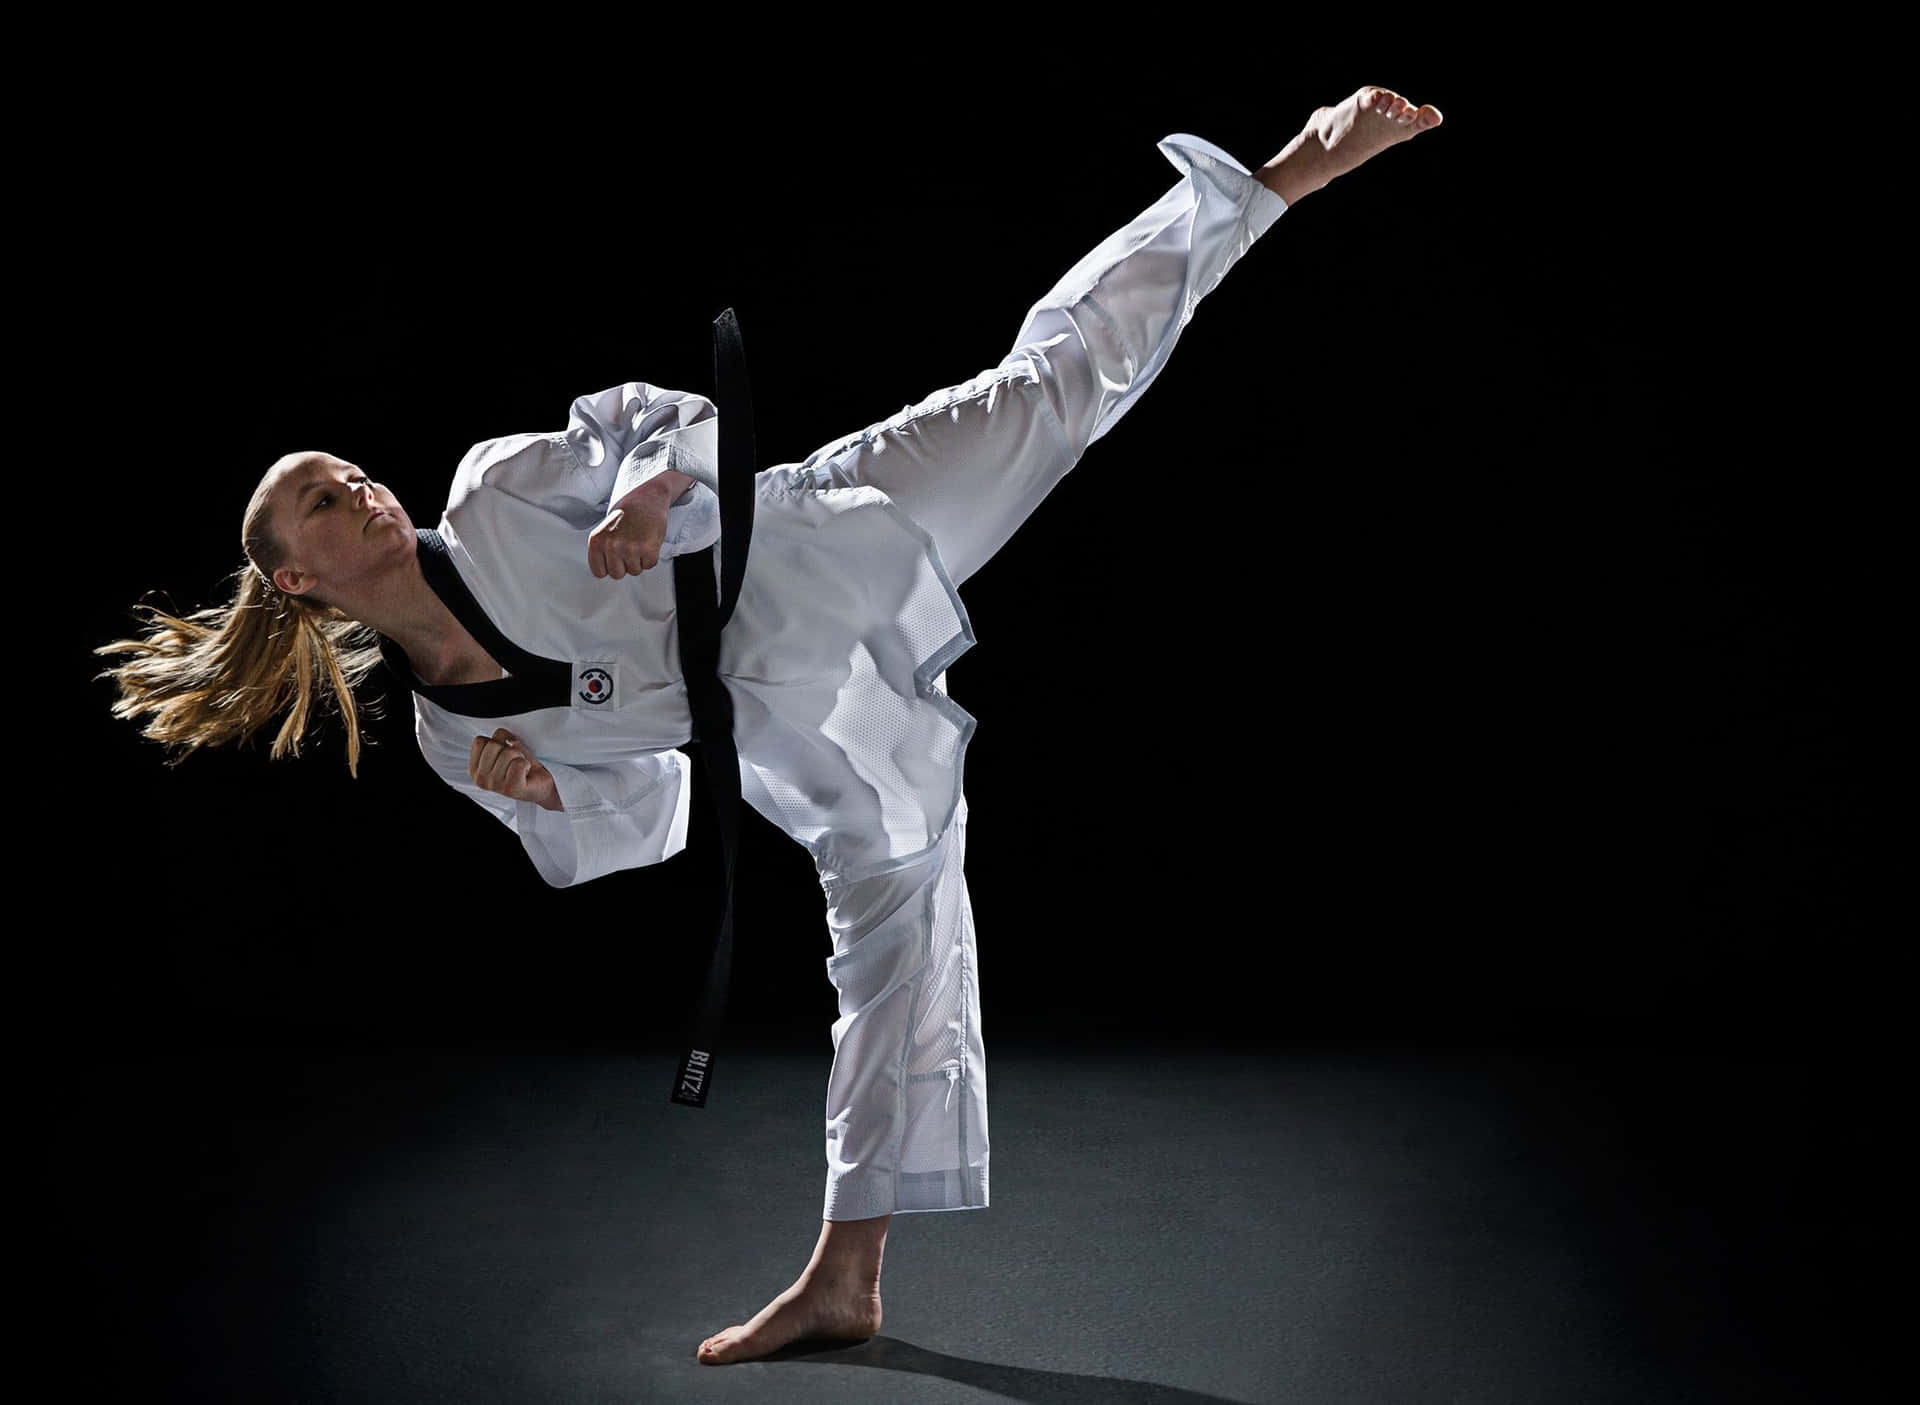 Enkvinna I En Vit Karatedräkt Gör En Spark